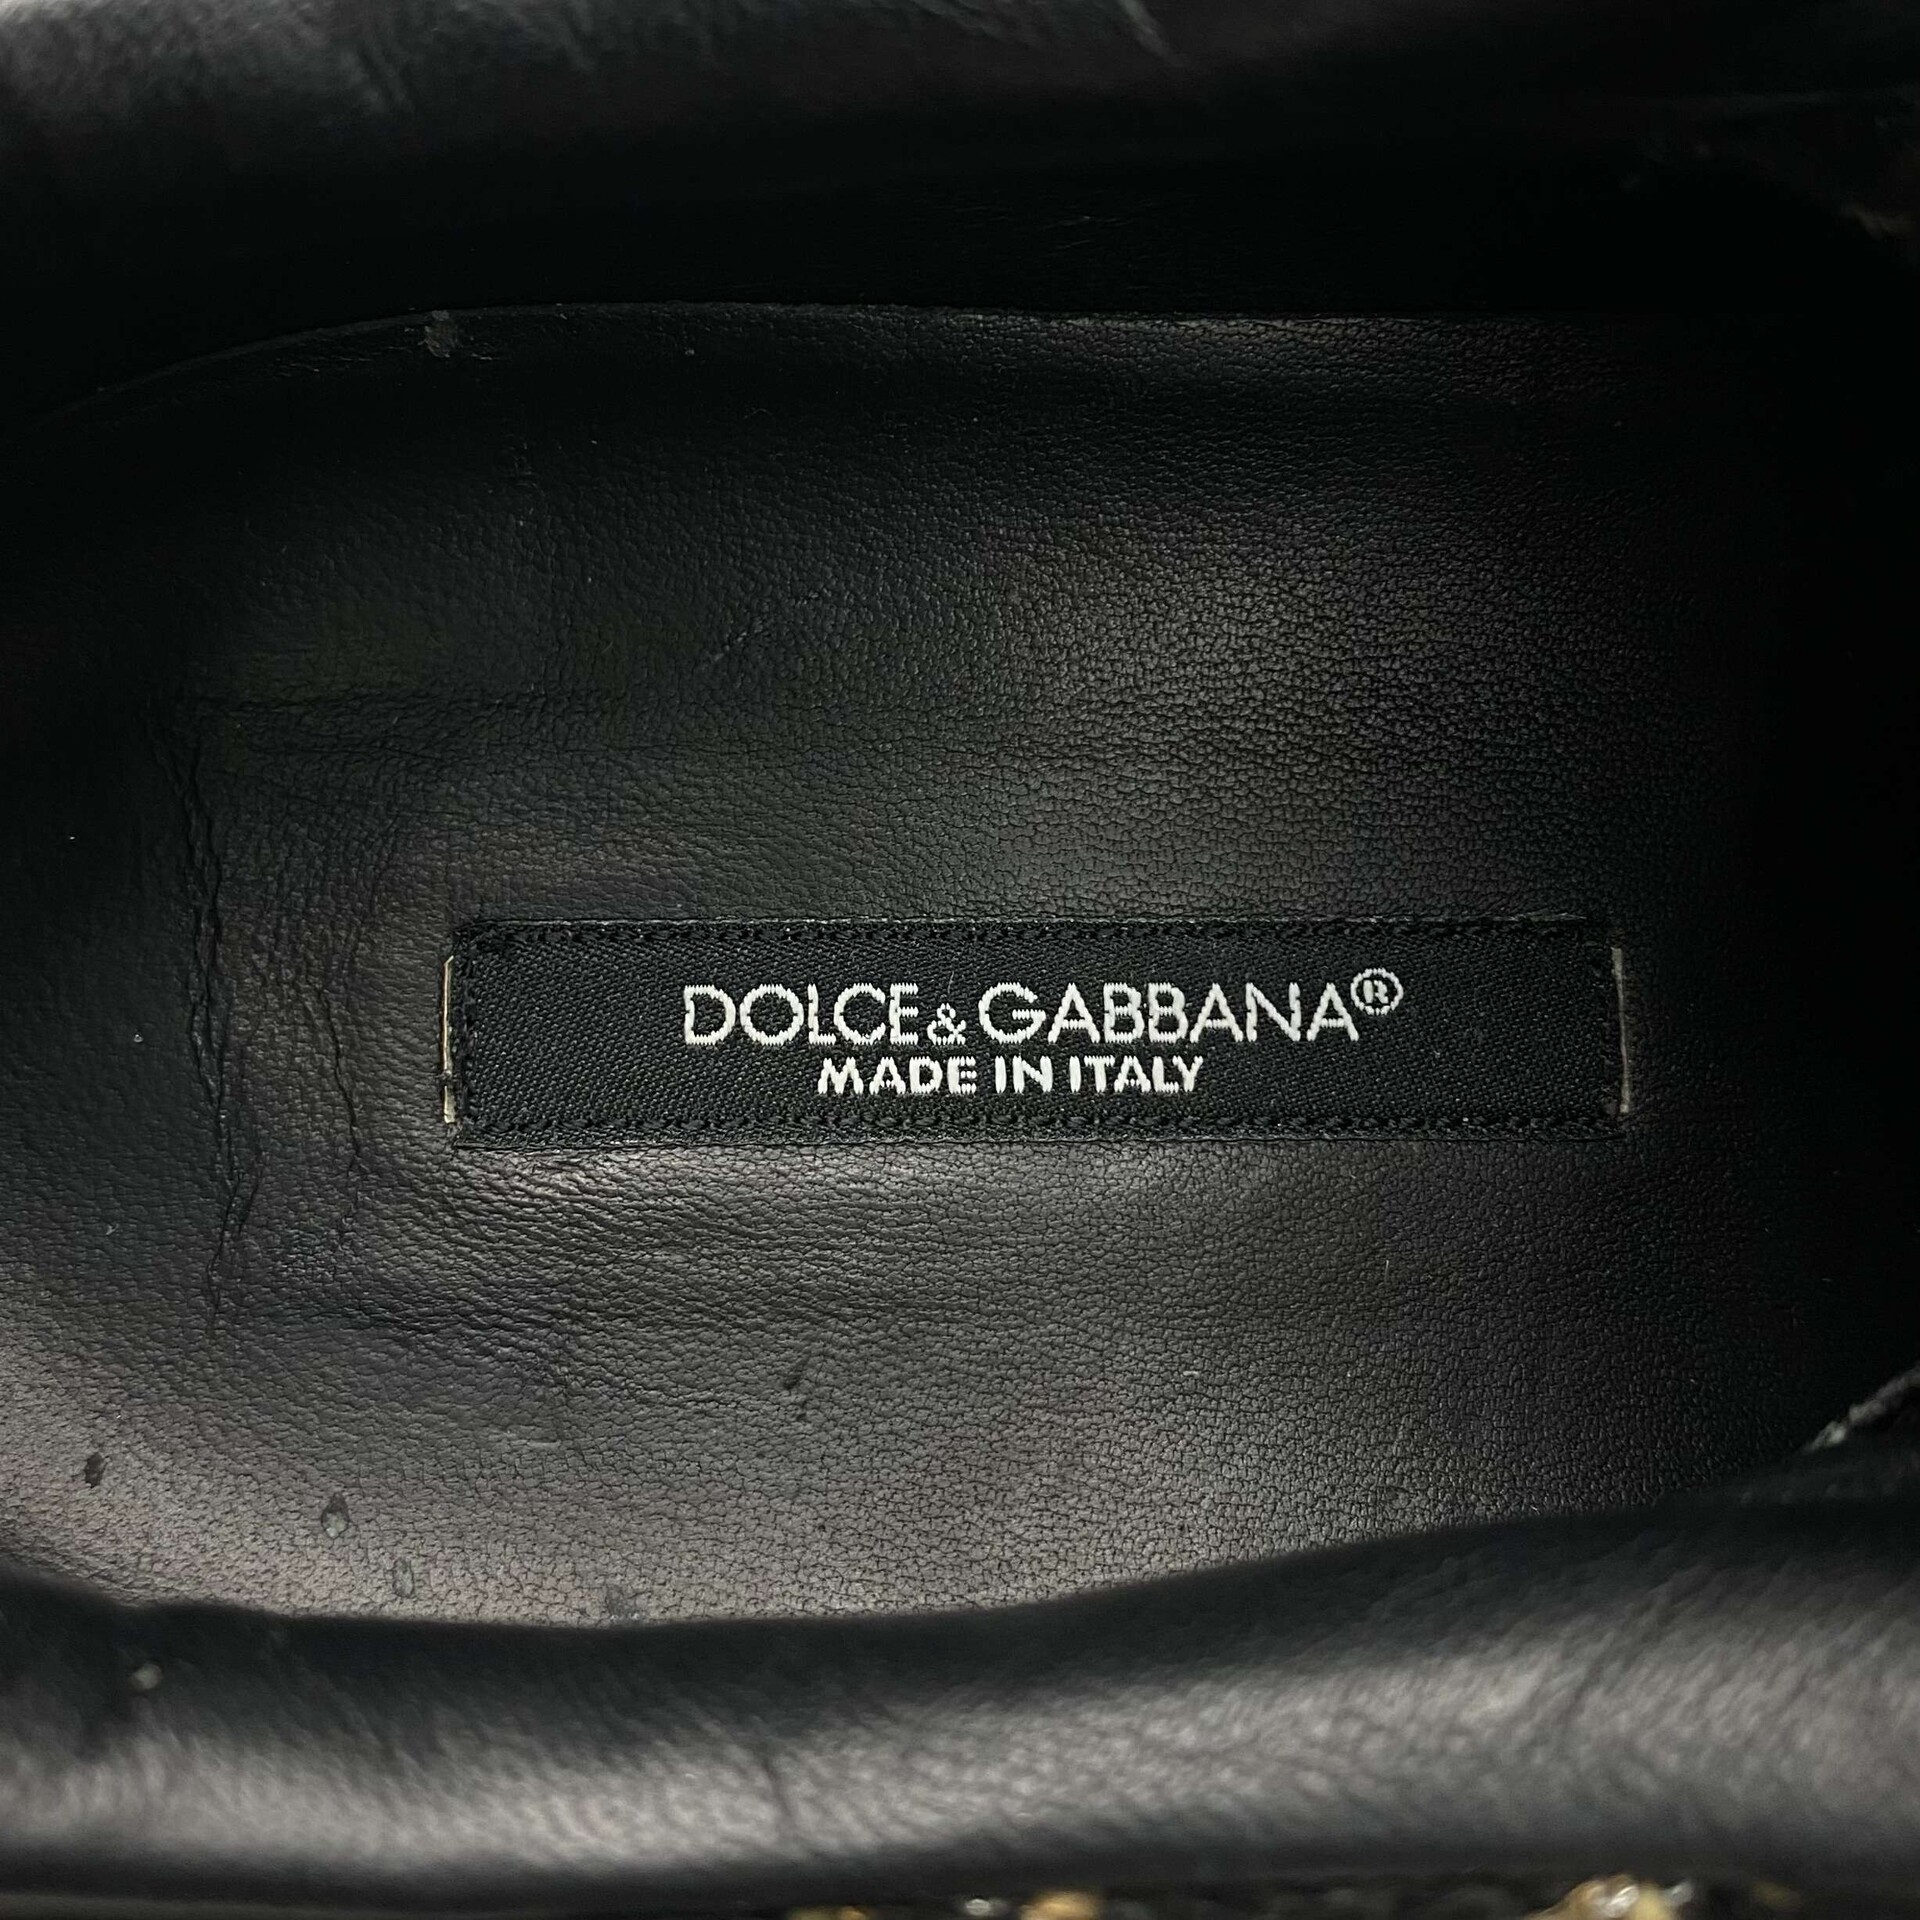 Tênis Dolce & Gabbana Tweed Cano Baixo